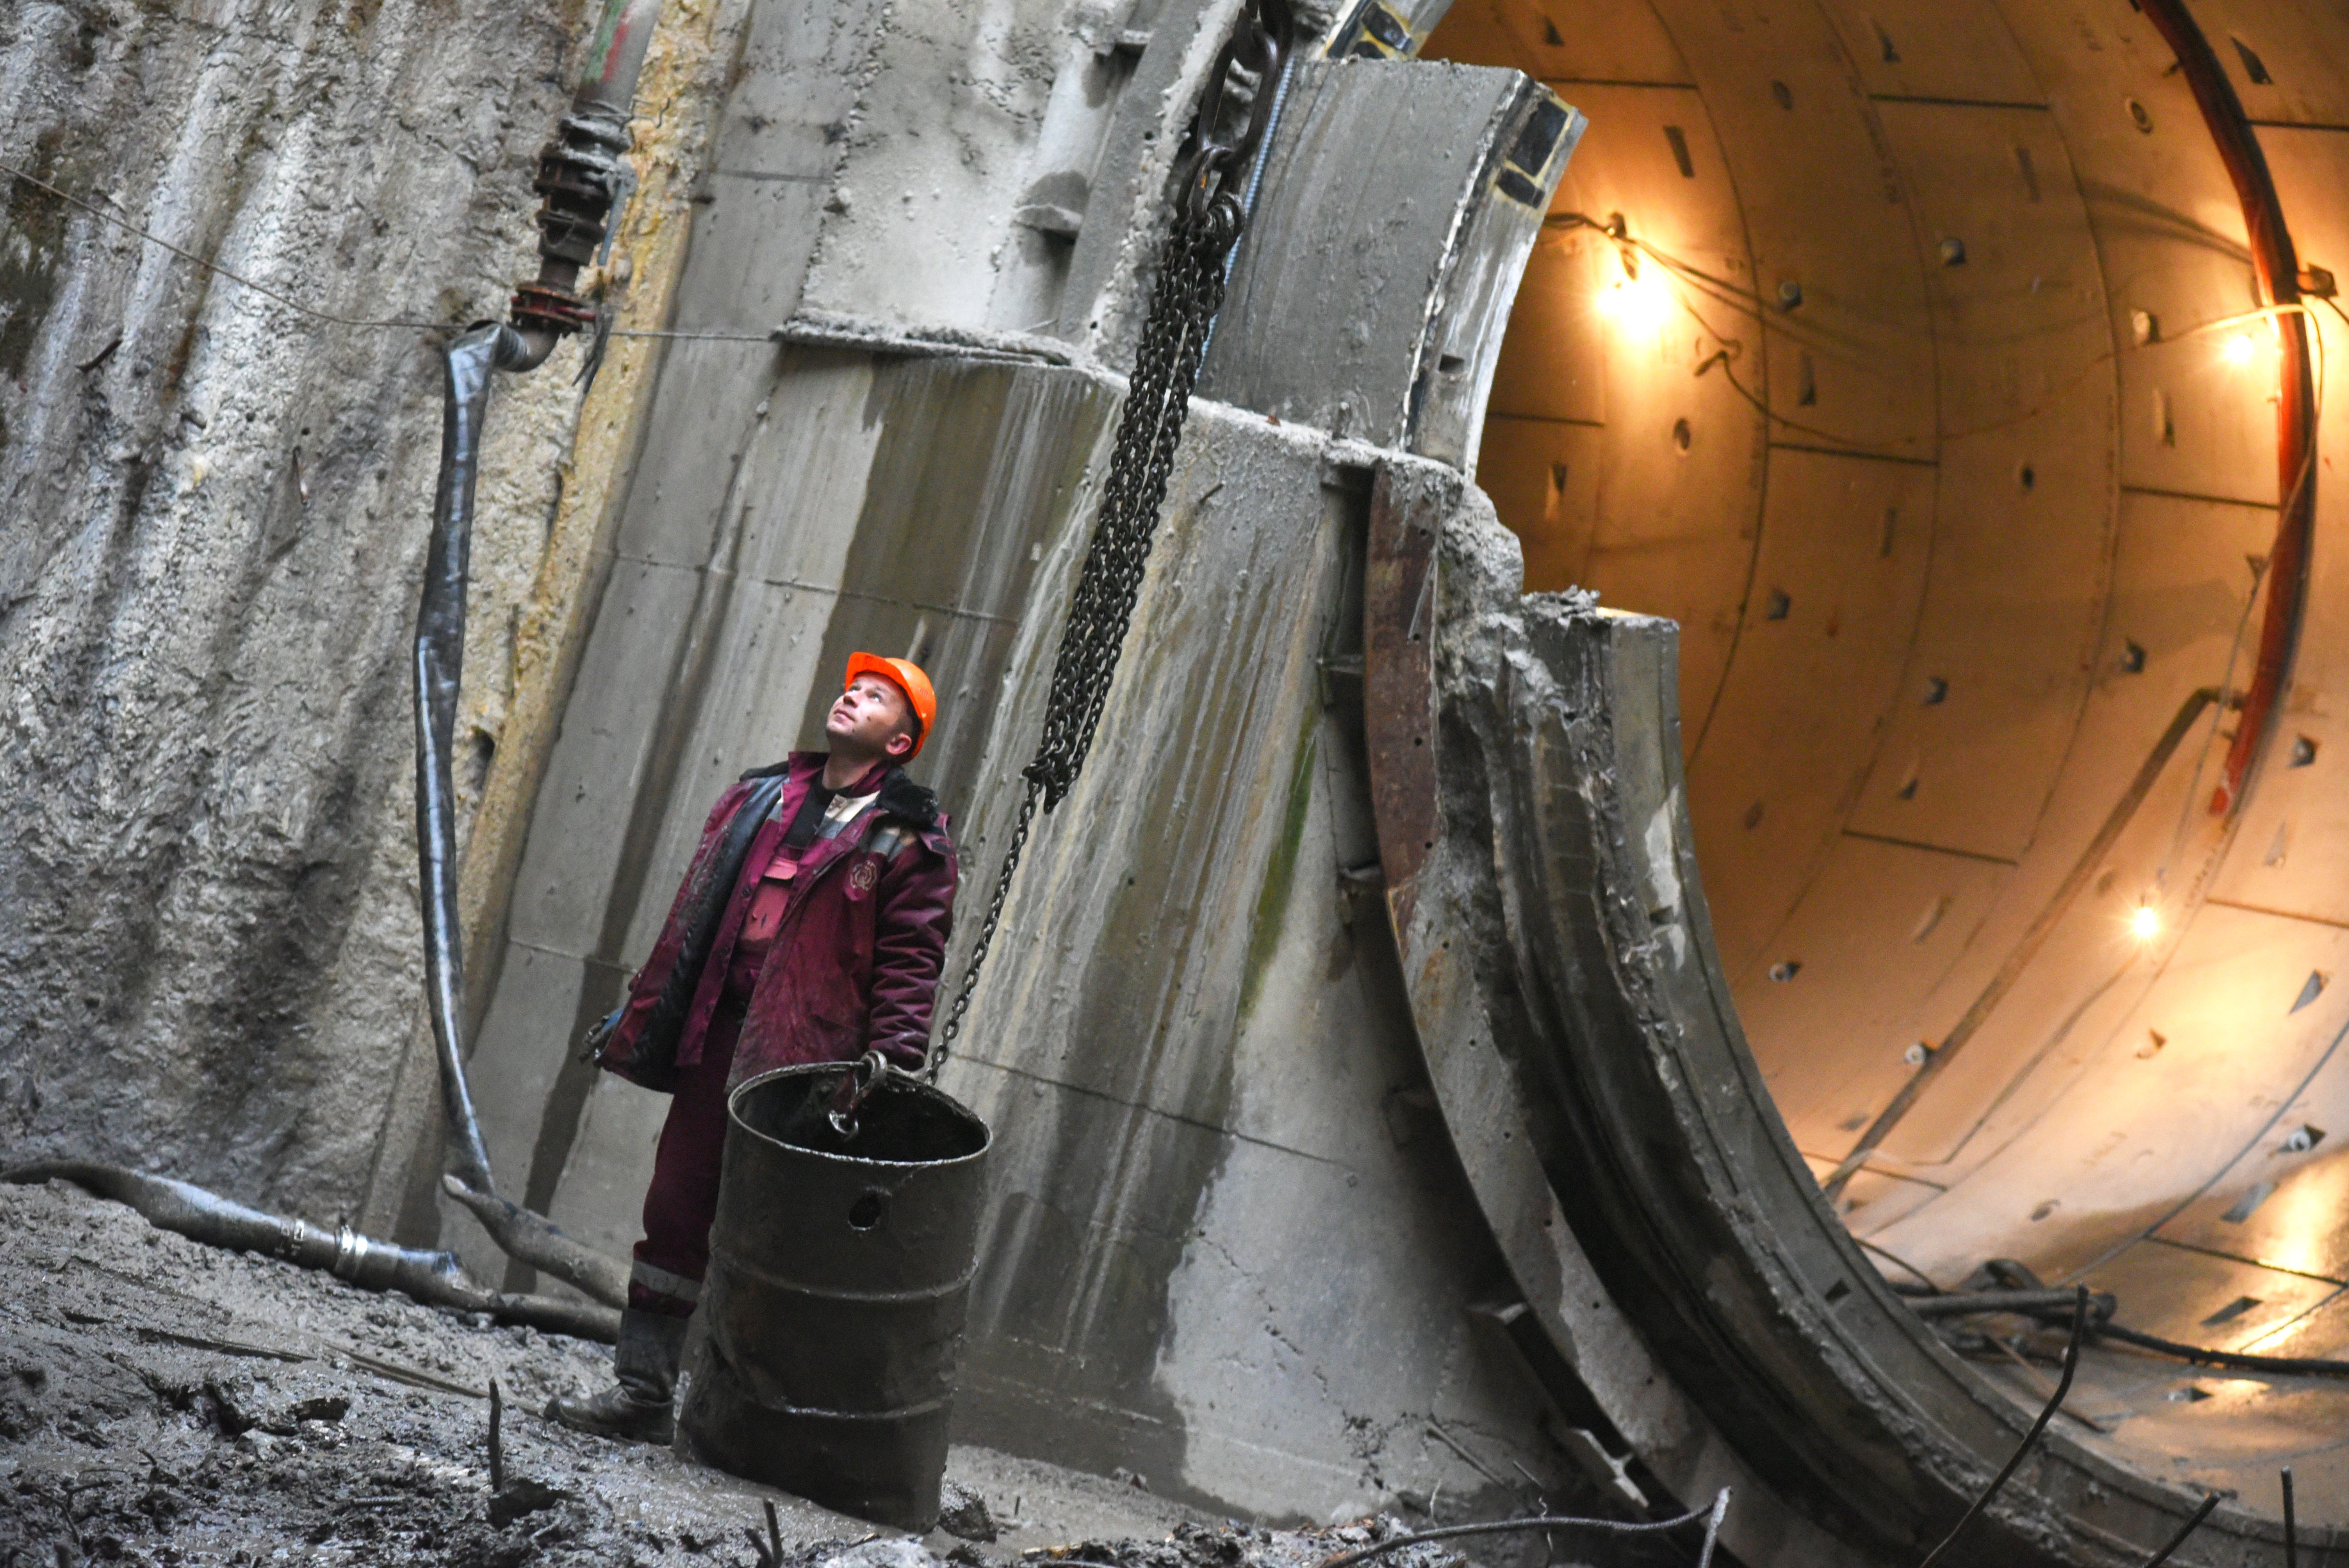 Проходка тоннеля в депо «Нижегородская» завершилась на юго-востоке Москвы